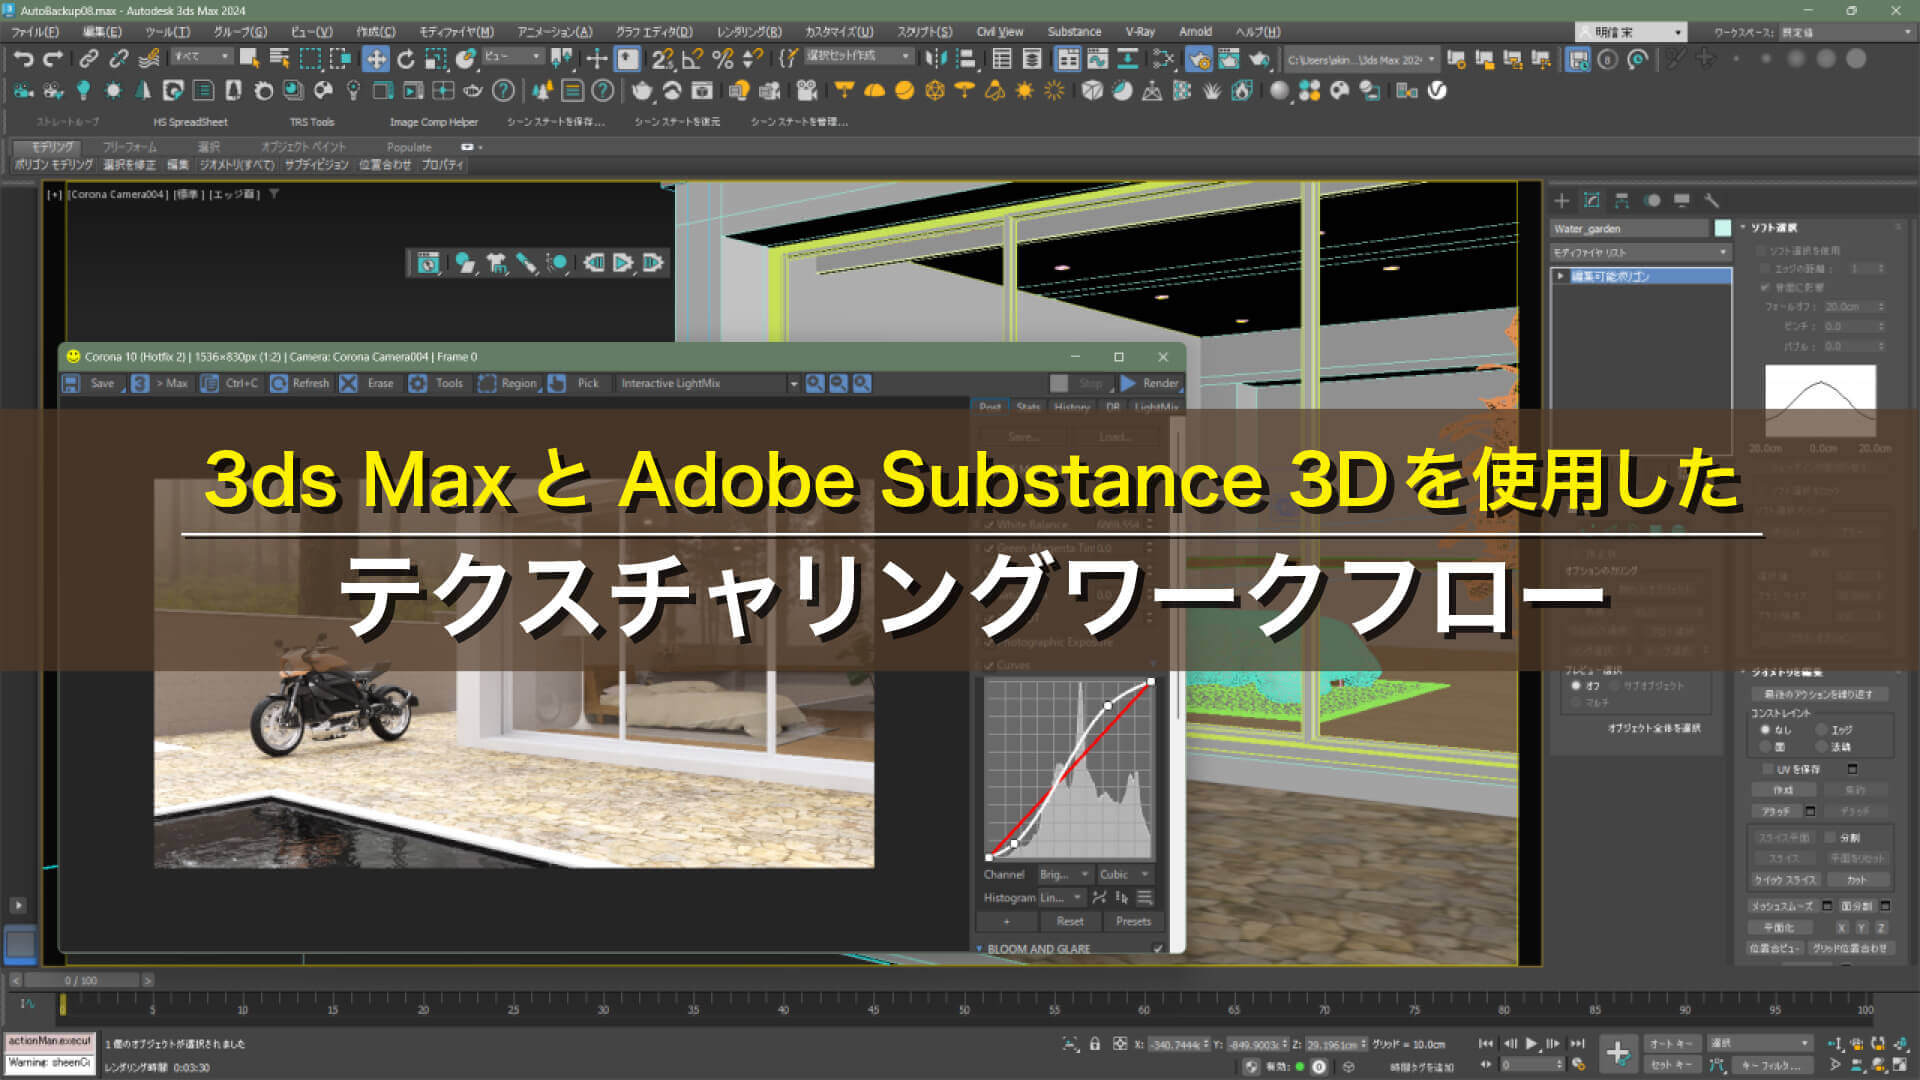 3ds MaxとAdobe Substance 3Dを使用したテクスチャリングワークフロー